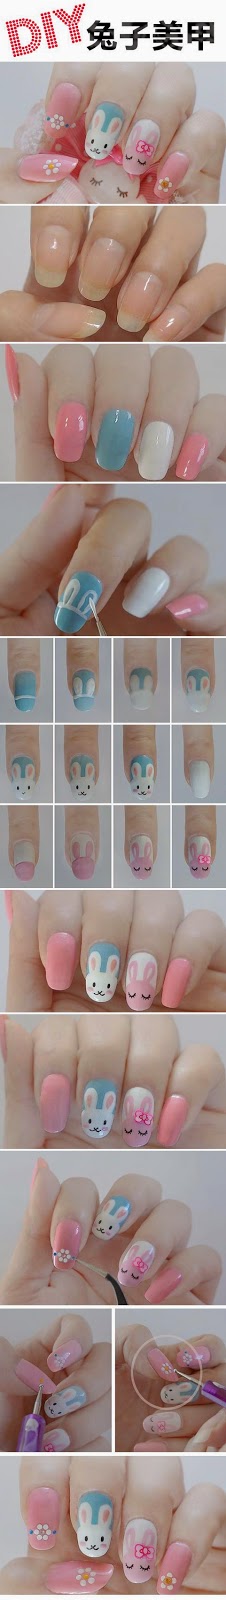 Cute-rabbit-nail-art-tutorial-2